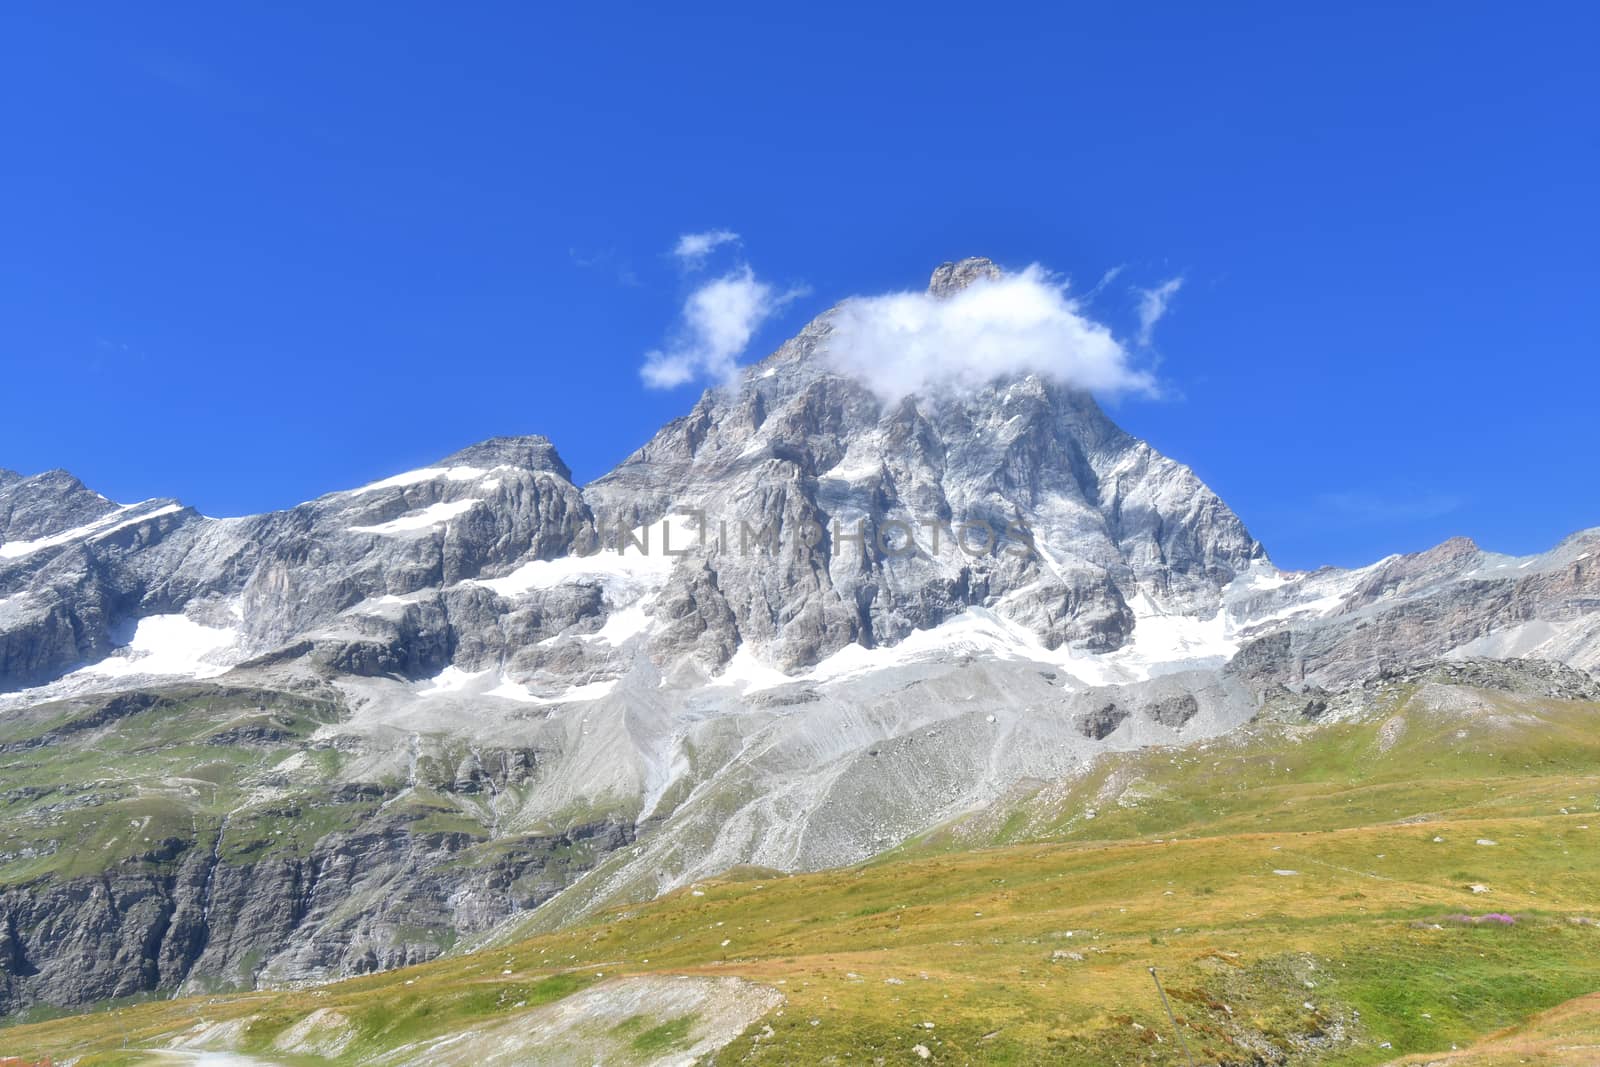 The Matterhorn by bongia